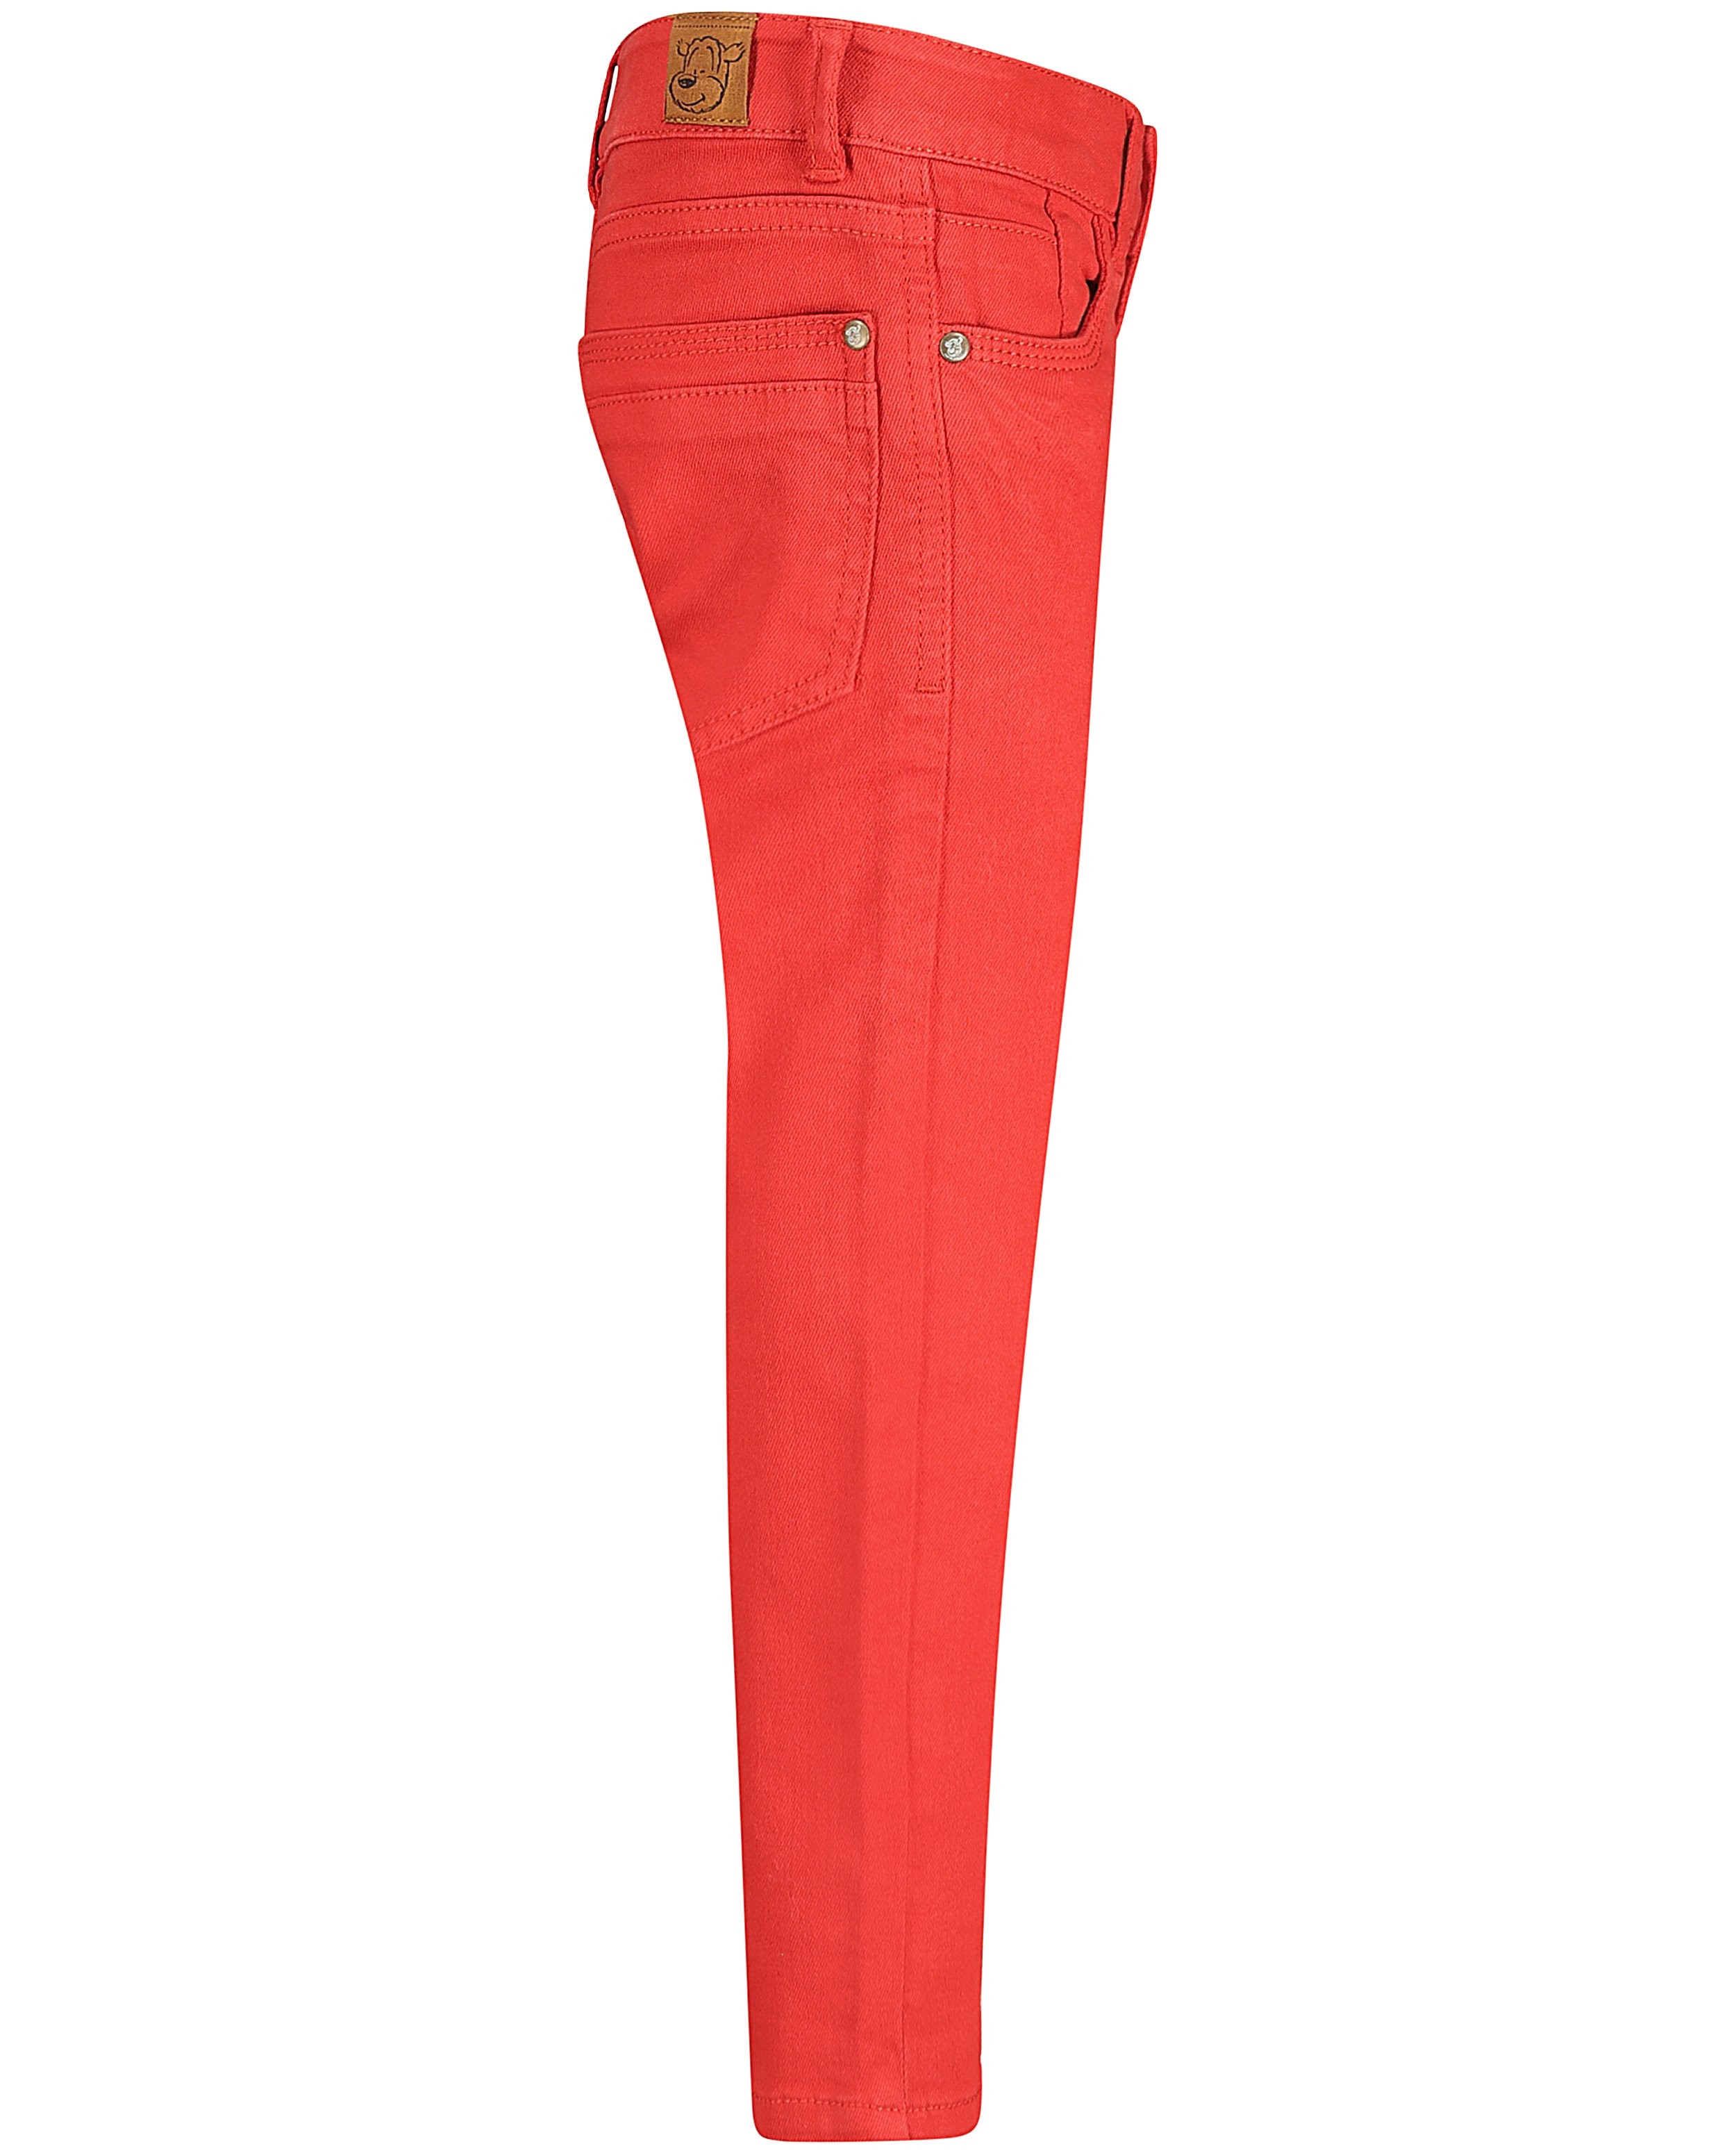 Pantalons - Jeans rouge